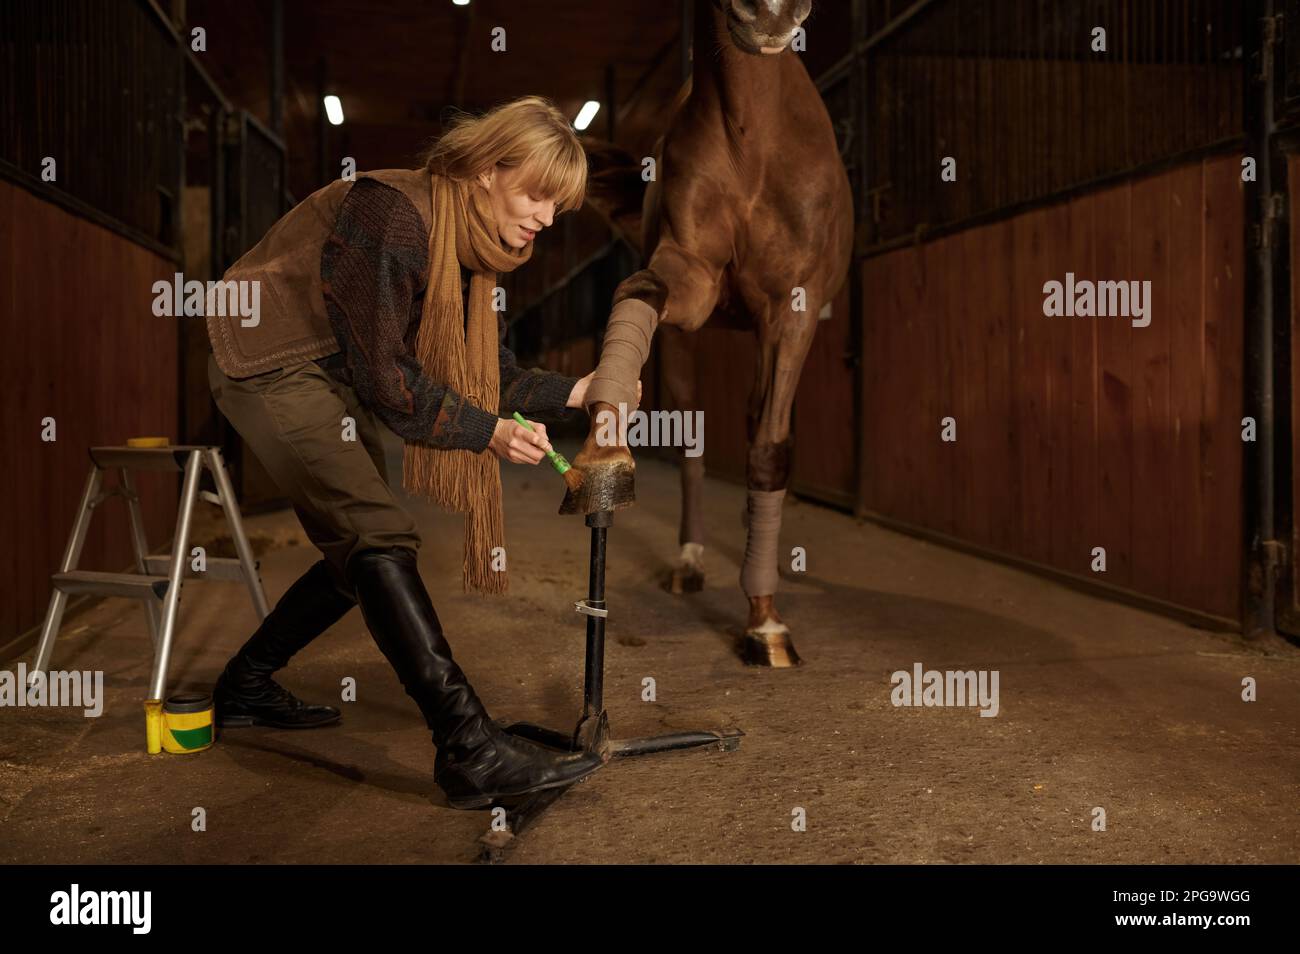 Jinete de mujer que aplica barniz protector a los cascos de caballo para evitar daños Foto de stock